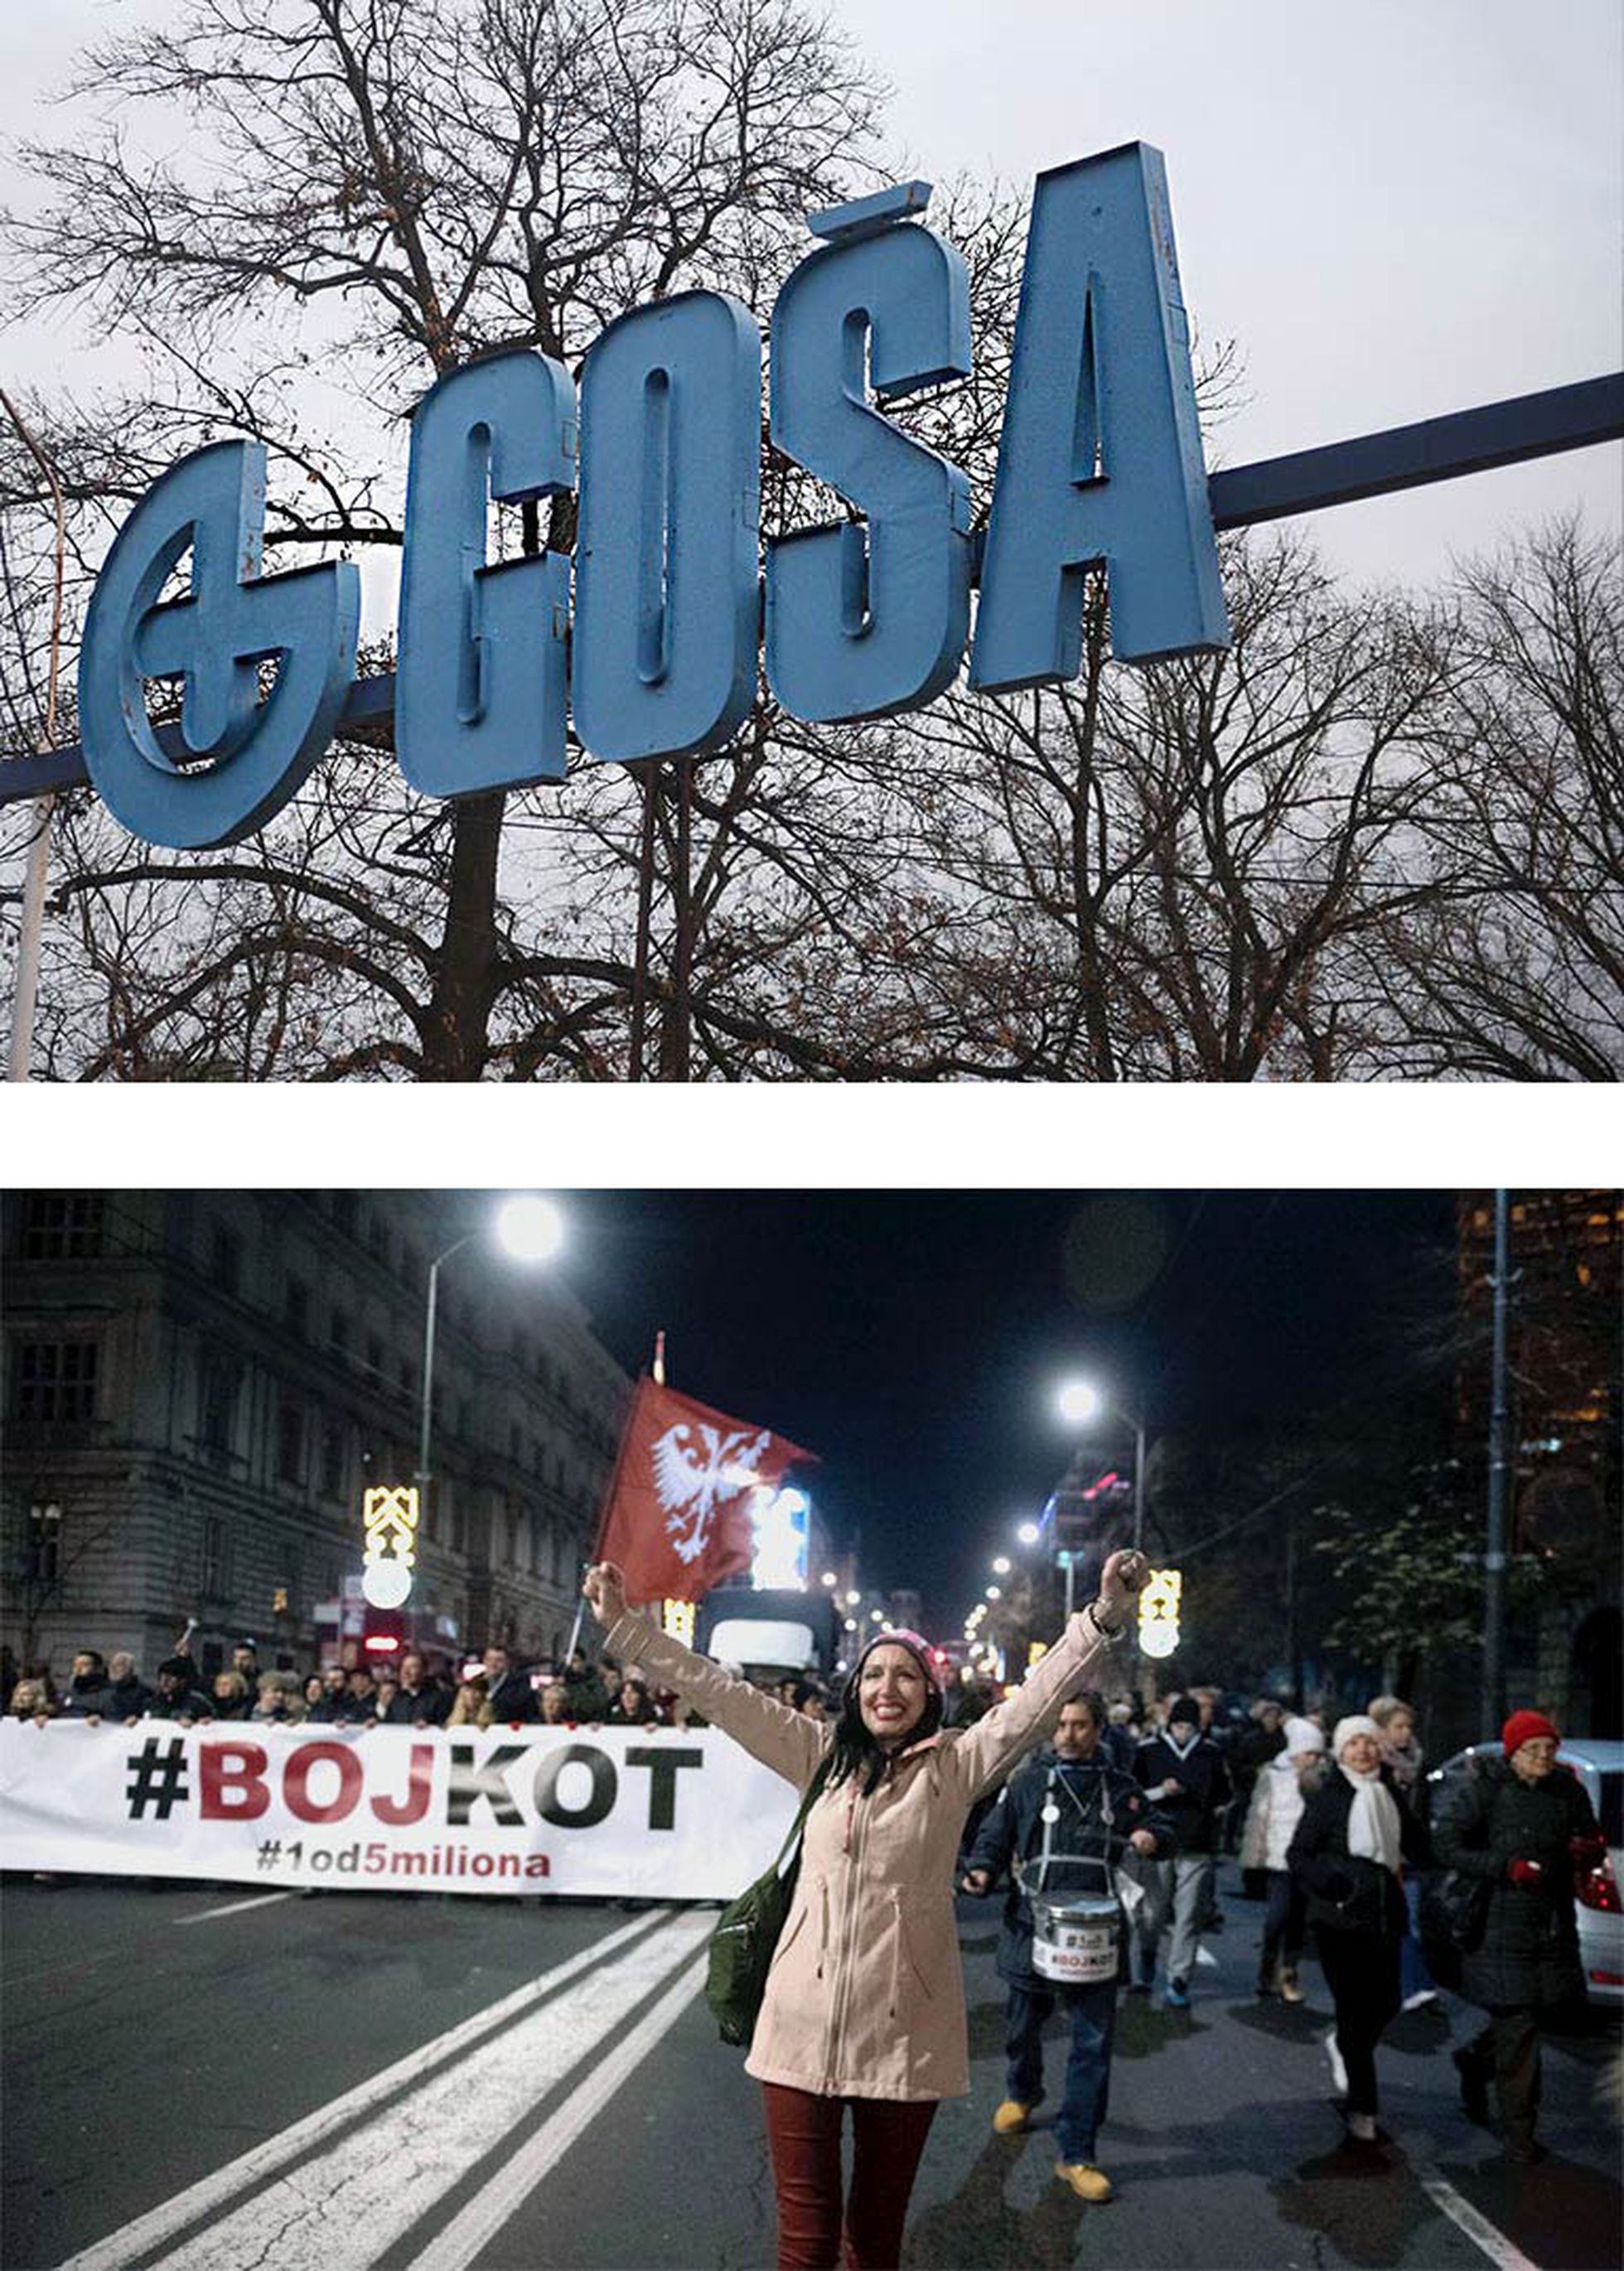 Arriba, letrero de la fábrica ferroviaria de Gosa. Abajo, protesta de 1od5miliona en Belgrado, a finales de 2019